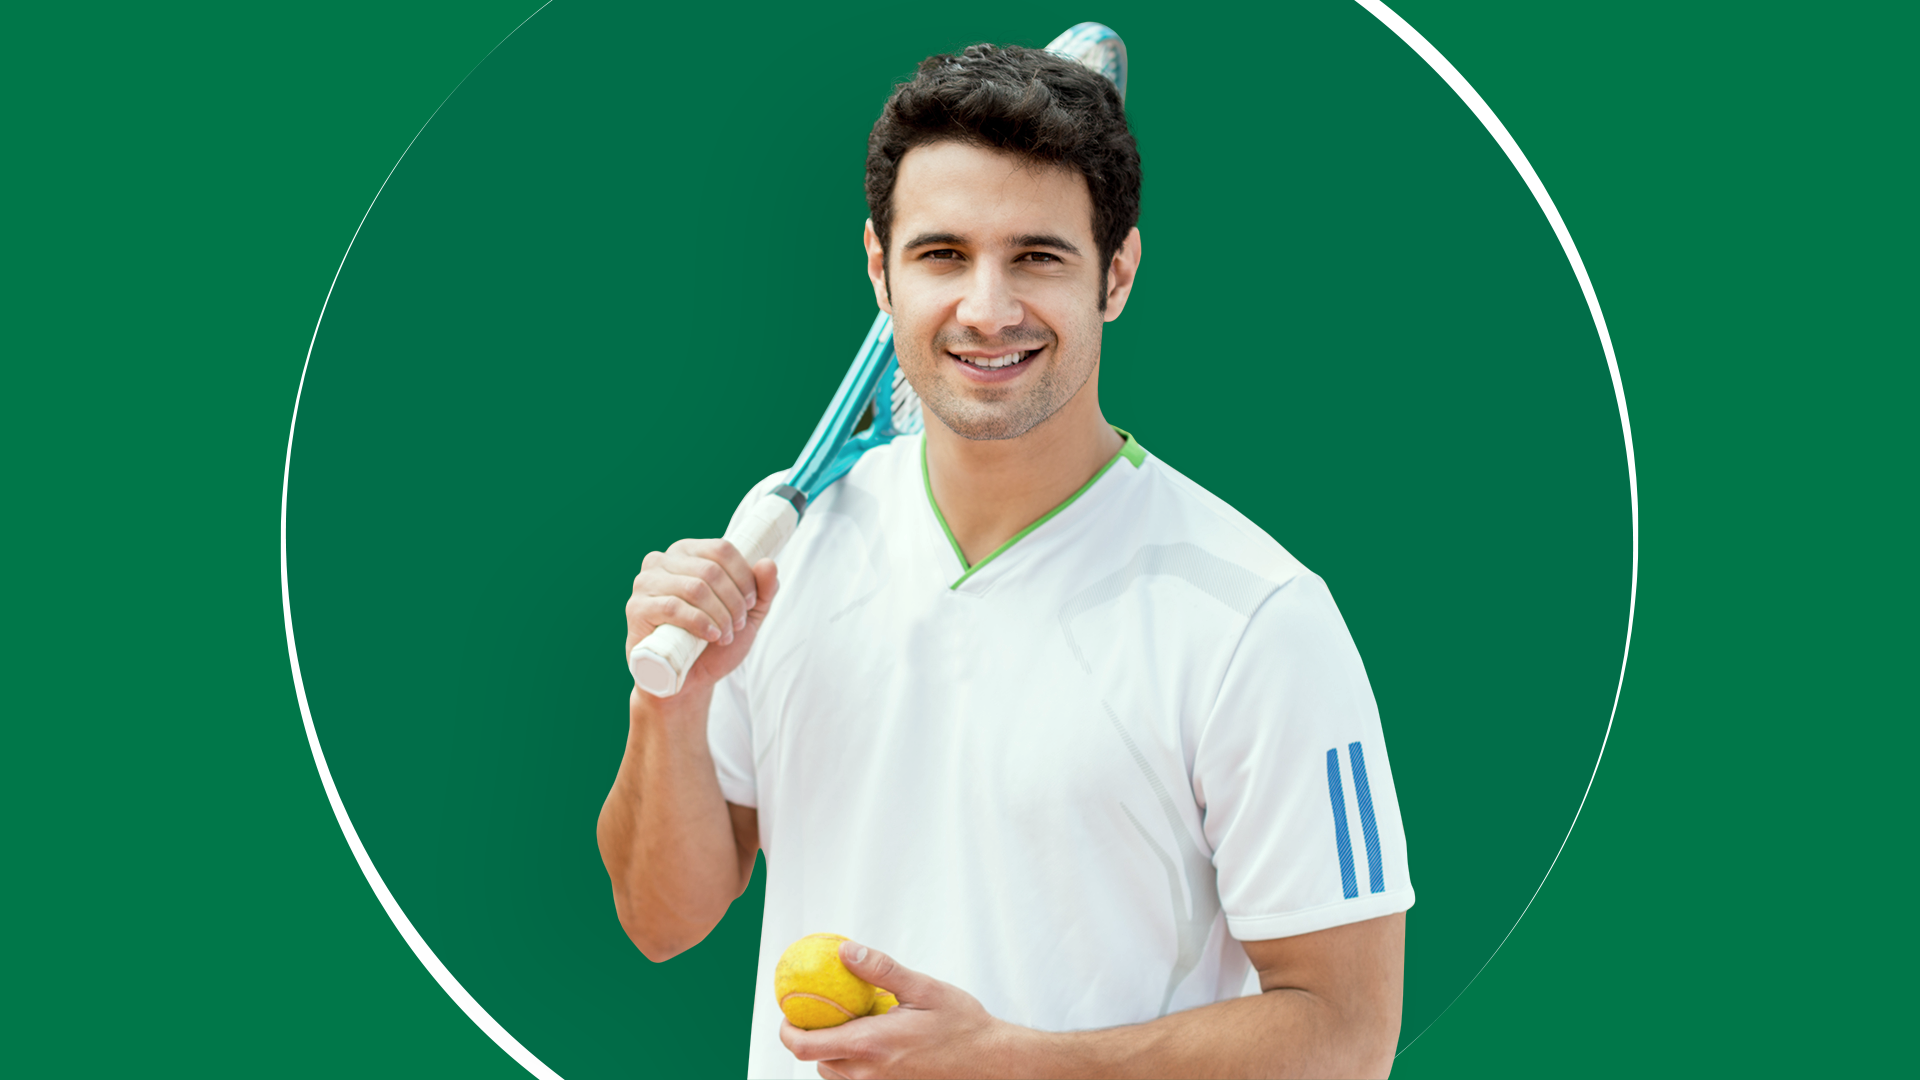 Jeune joueur de tennis tenant une raquette dans sa main droite et deux balles de tennis dans sa main gauche, souriant à la caméra